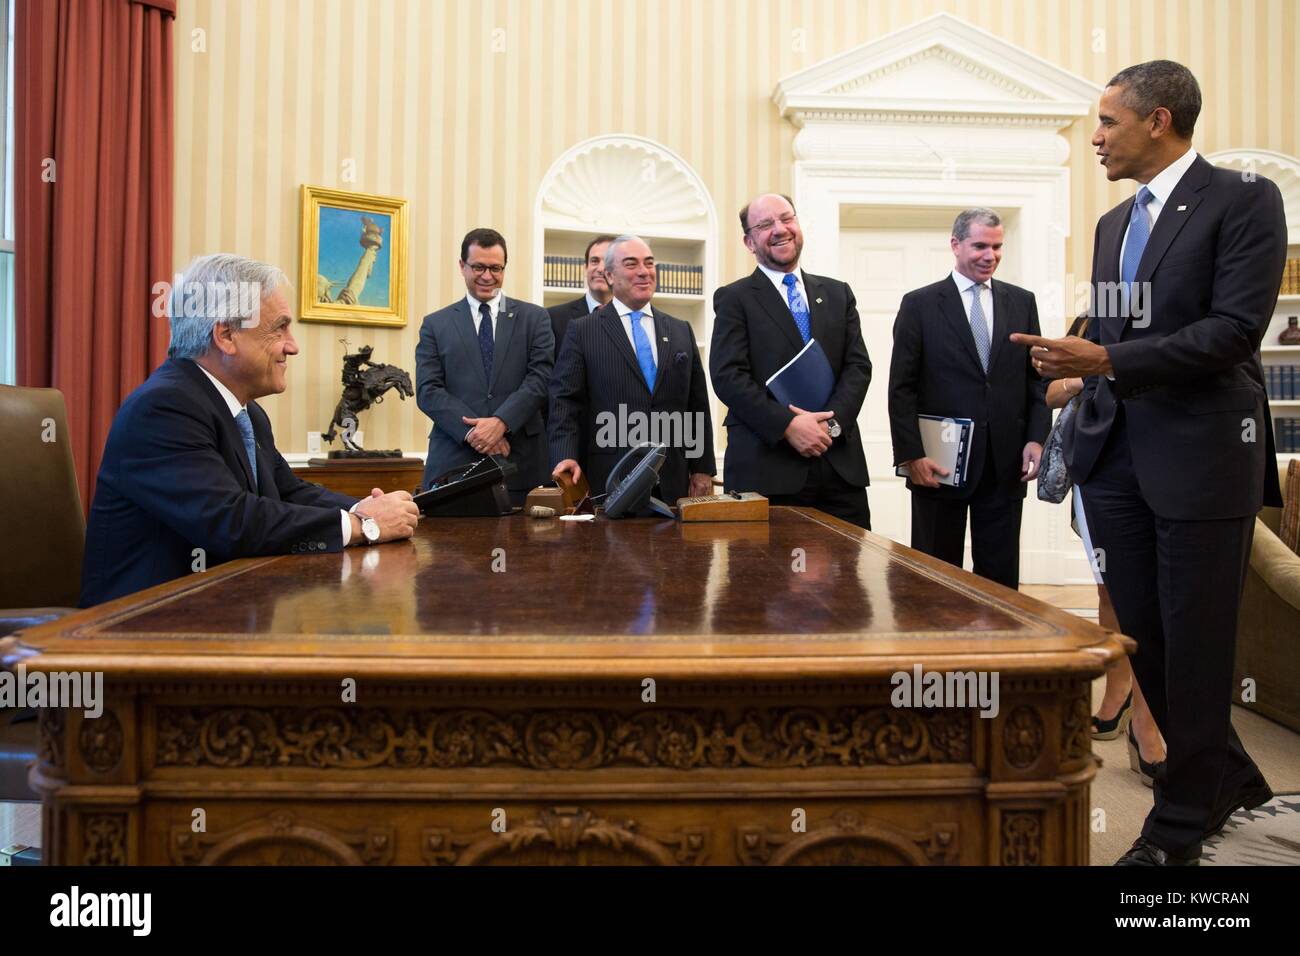 Präsident Sebastian Pinera von Chile sitzt an der Obama-regierung Resolute Desk im Oval Office. Die Chilenische Delegierten teilen die gute Laune. Juni 4, 2013. (BSLOC 2015 3 151) Stockfoto